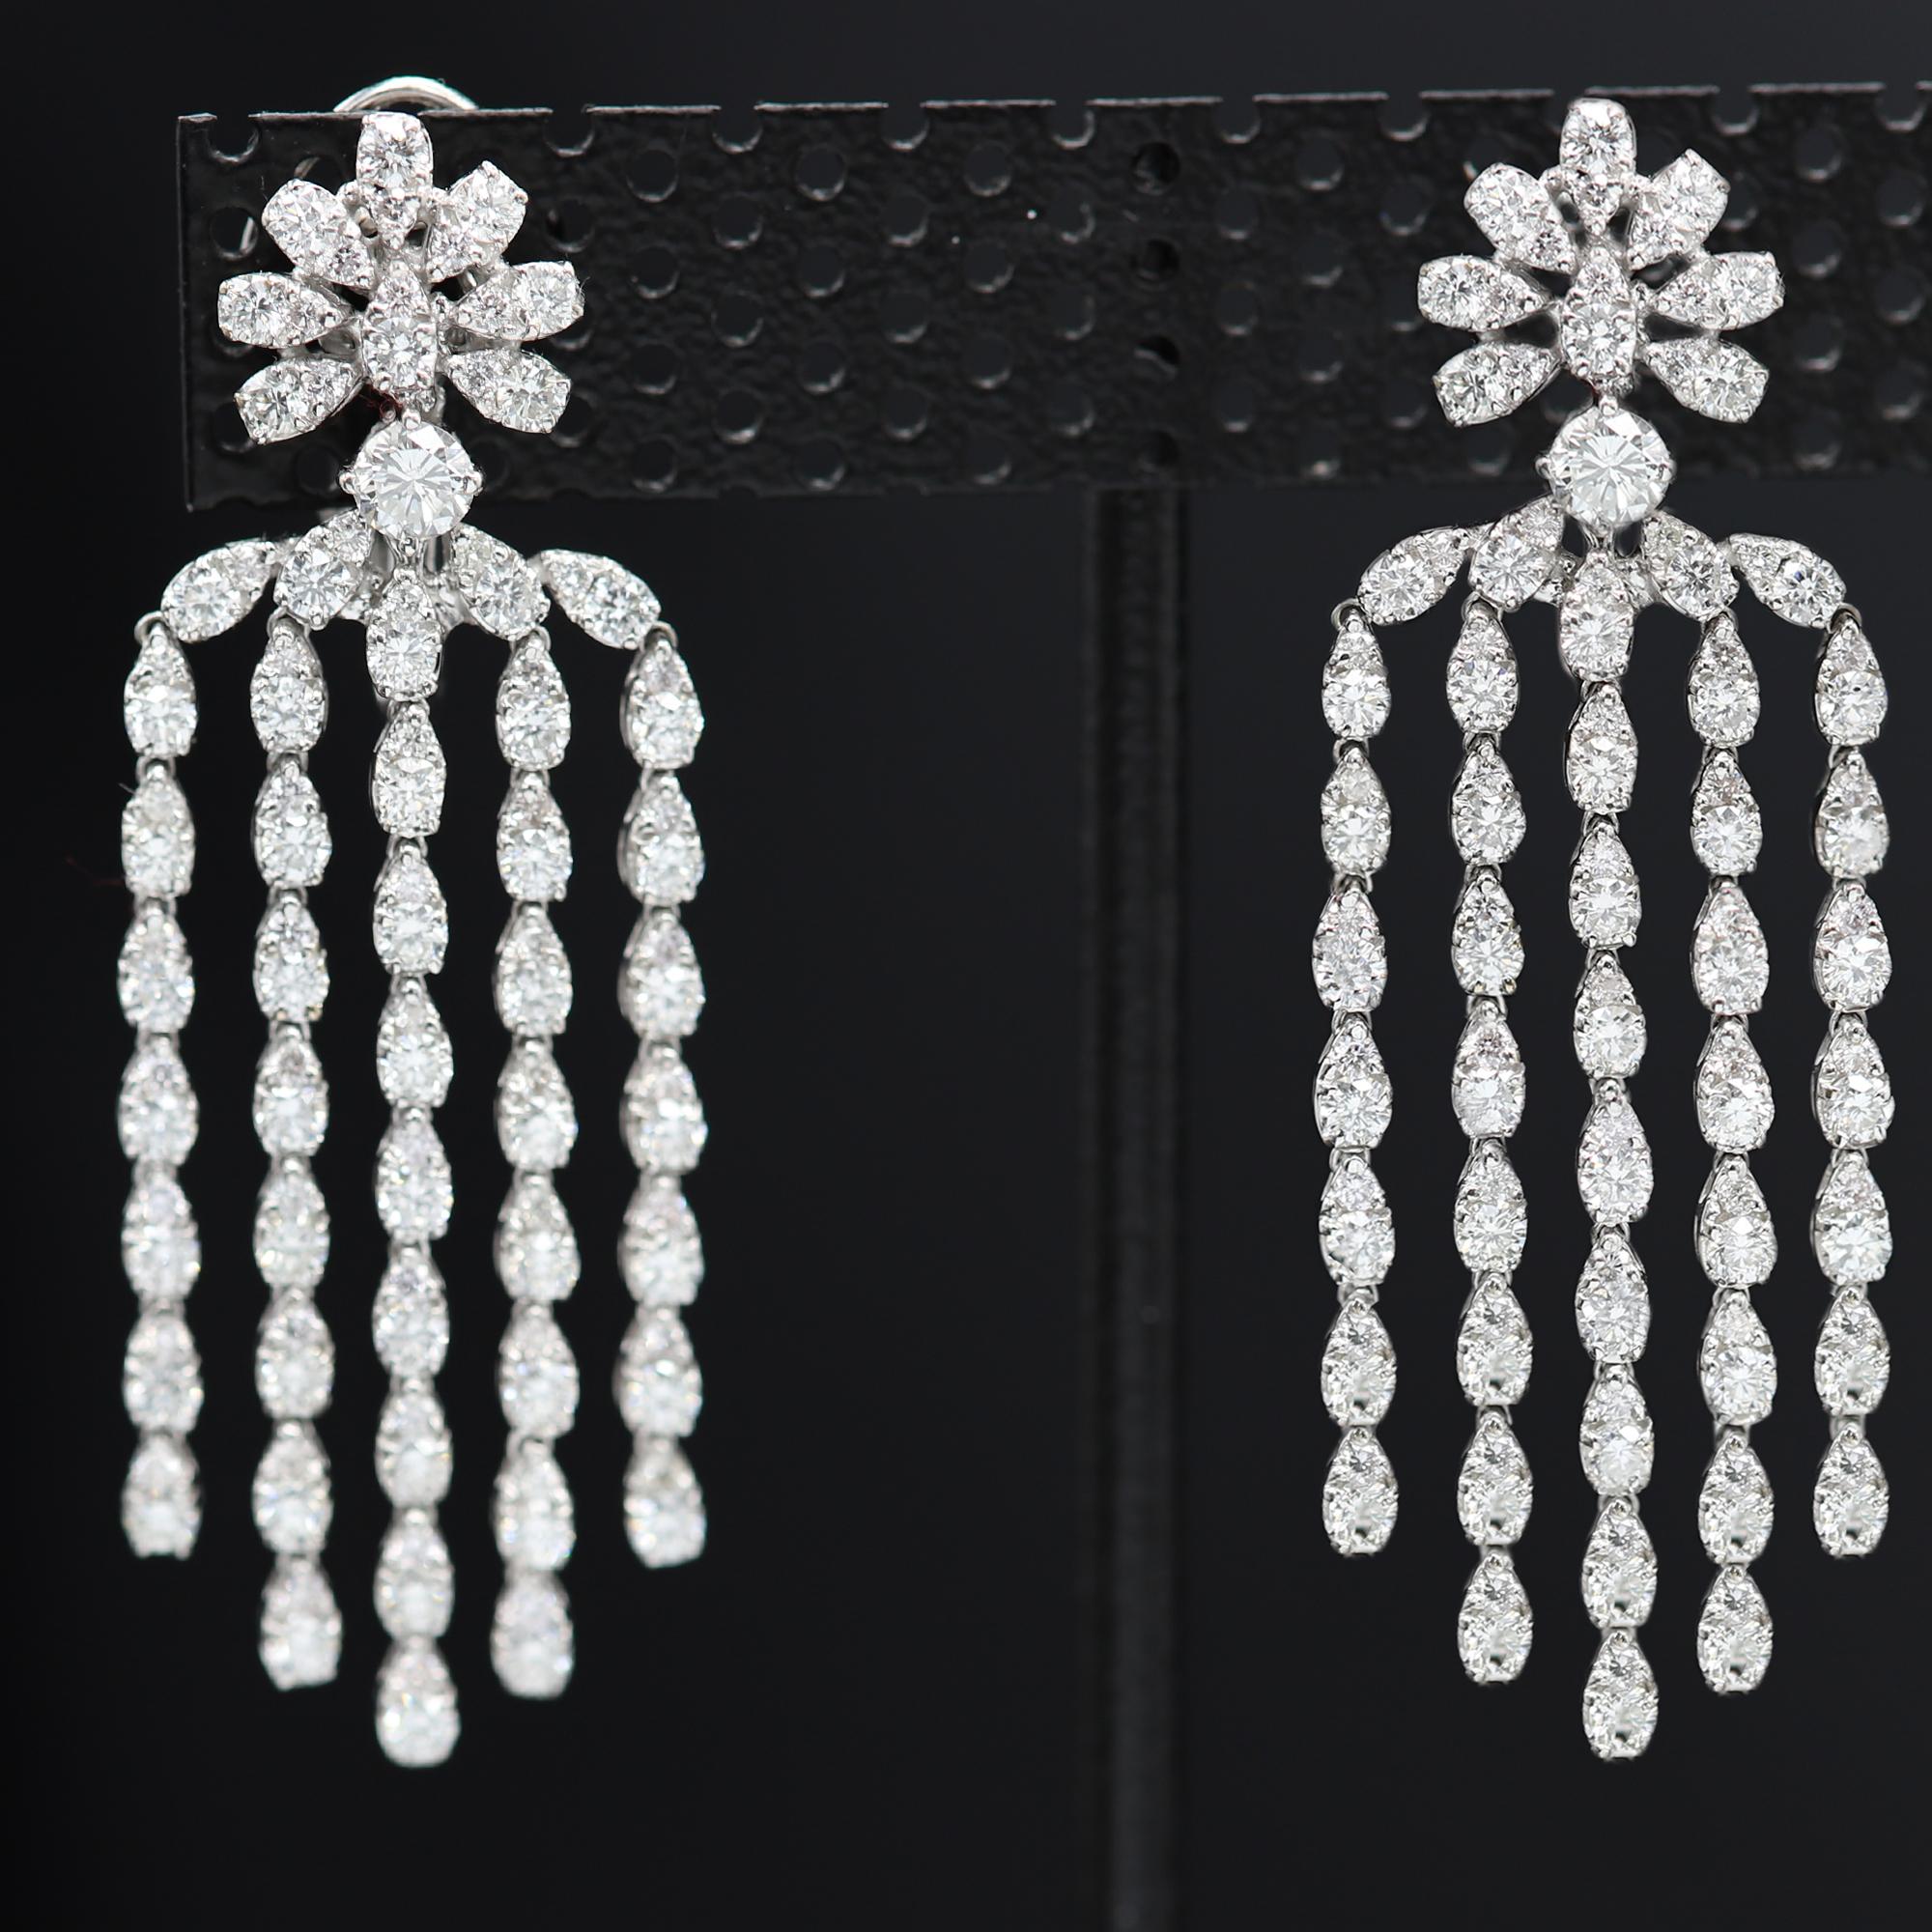 Diamond Dangling Earrings 18 Karat White Gold Chandelier Earrings 2' Inch Dangle For Sale 4